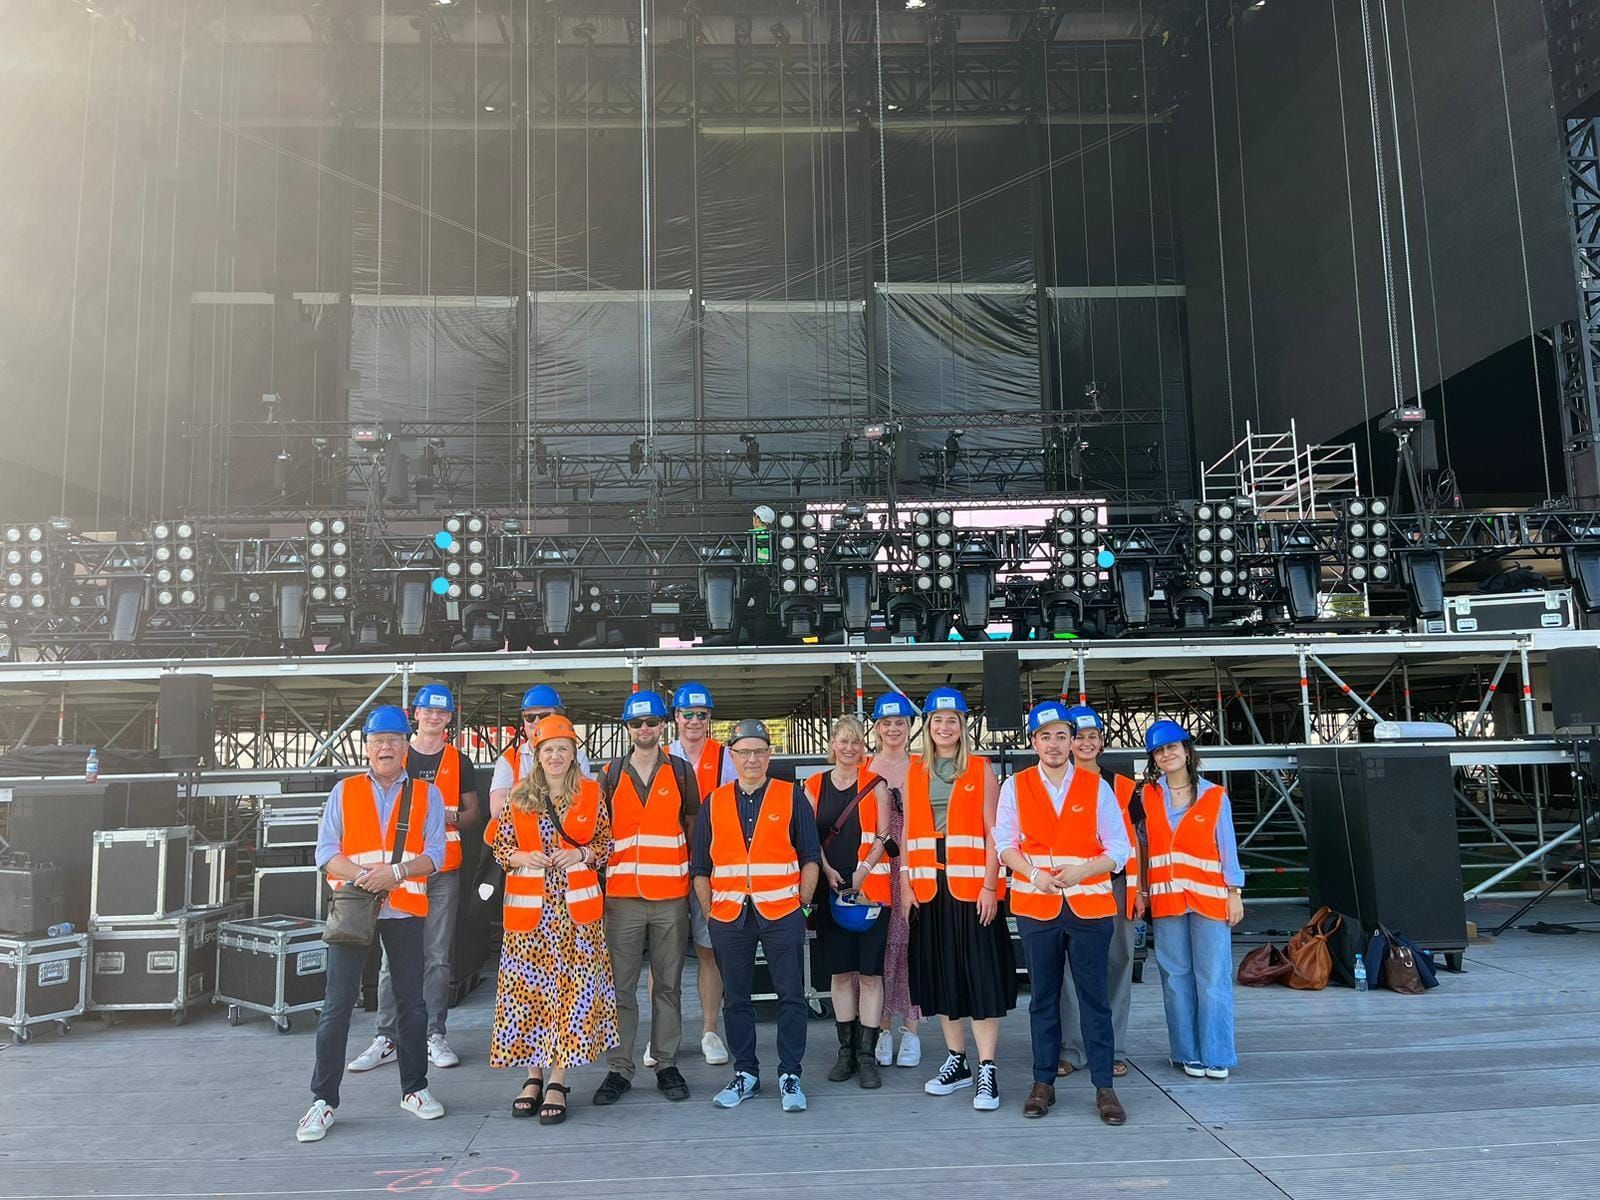 Bild zu So arbeitet die Branche: Backstage-Tour während der Aufbauphase des Lollapalooza Berlin macht die Herausforderungen der Veranstaltungswirtschaft deutlich